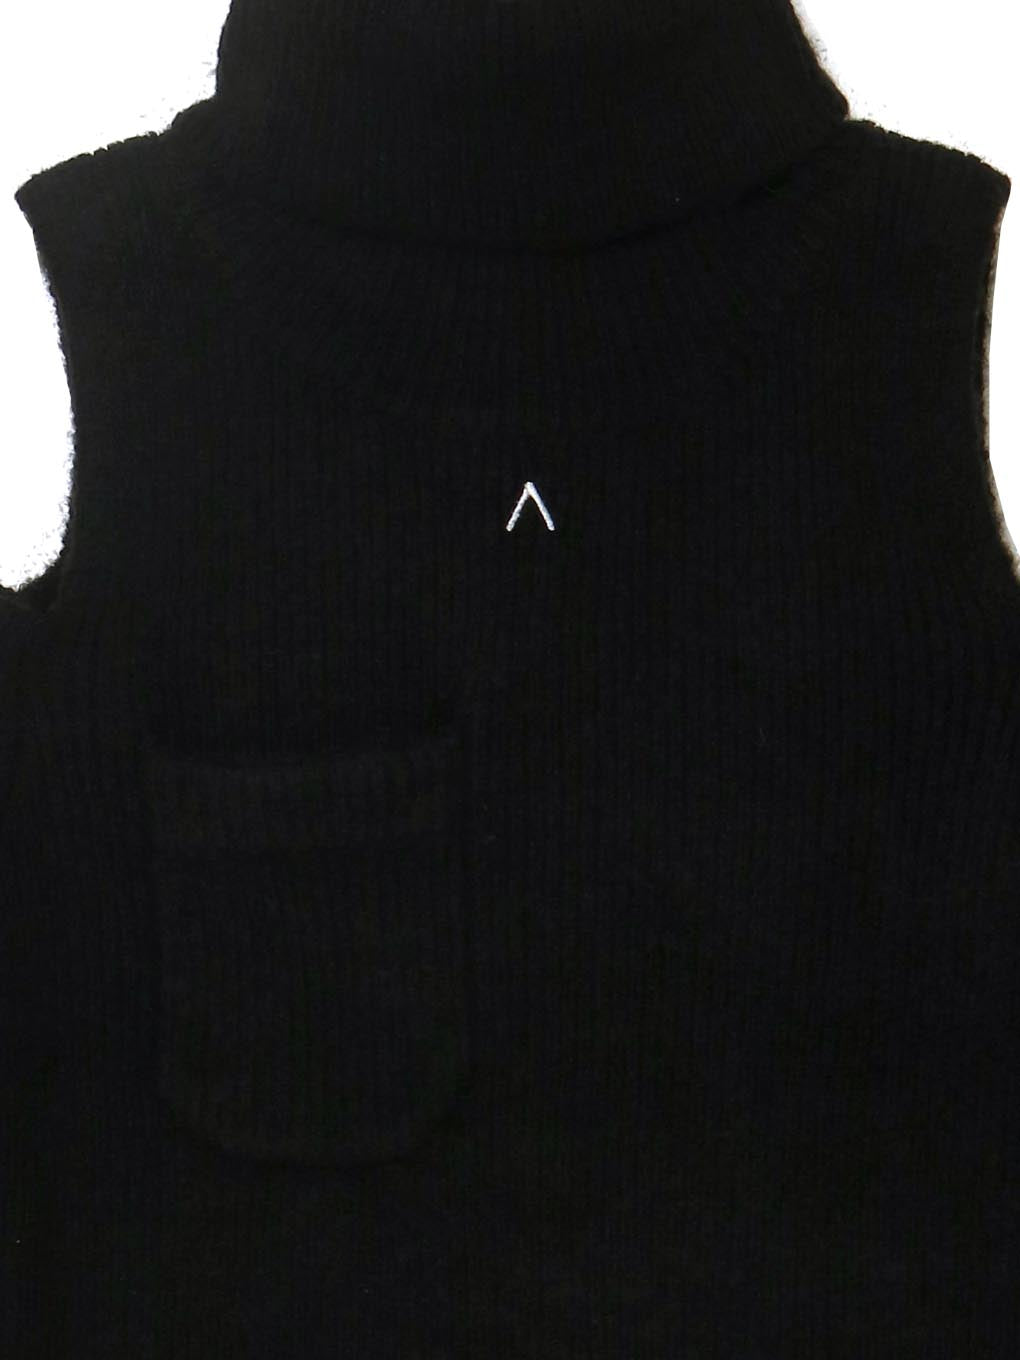 andmary demi knit mini dressdemiknitminid